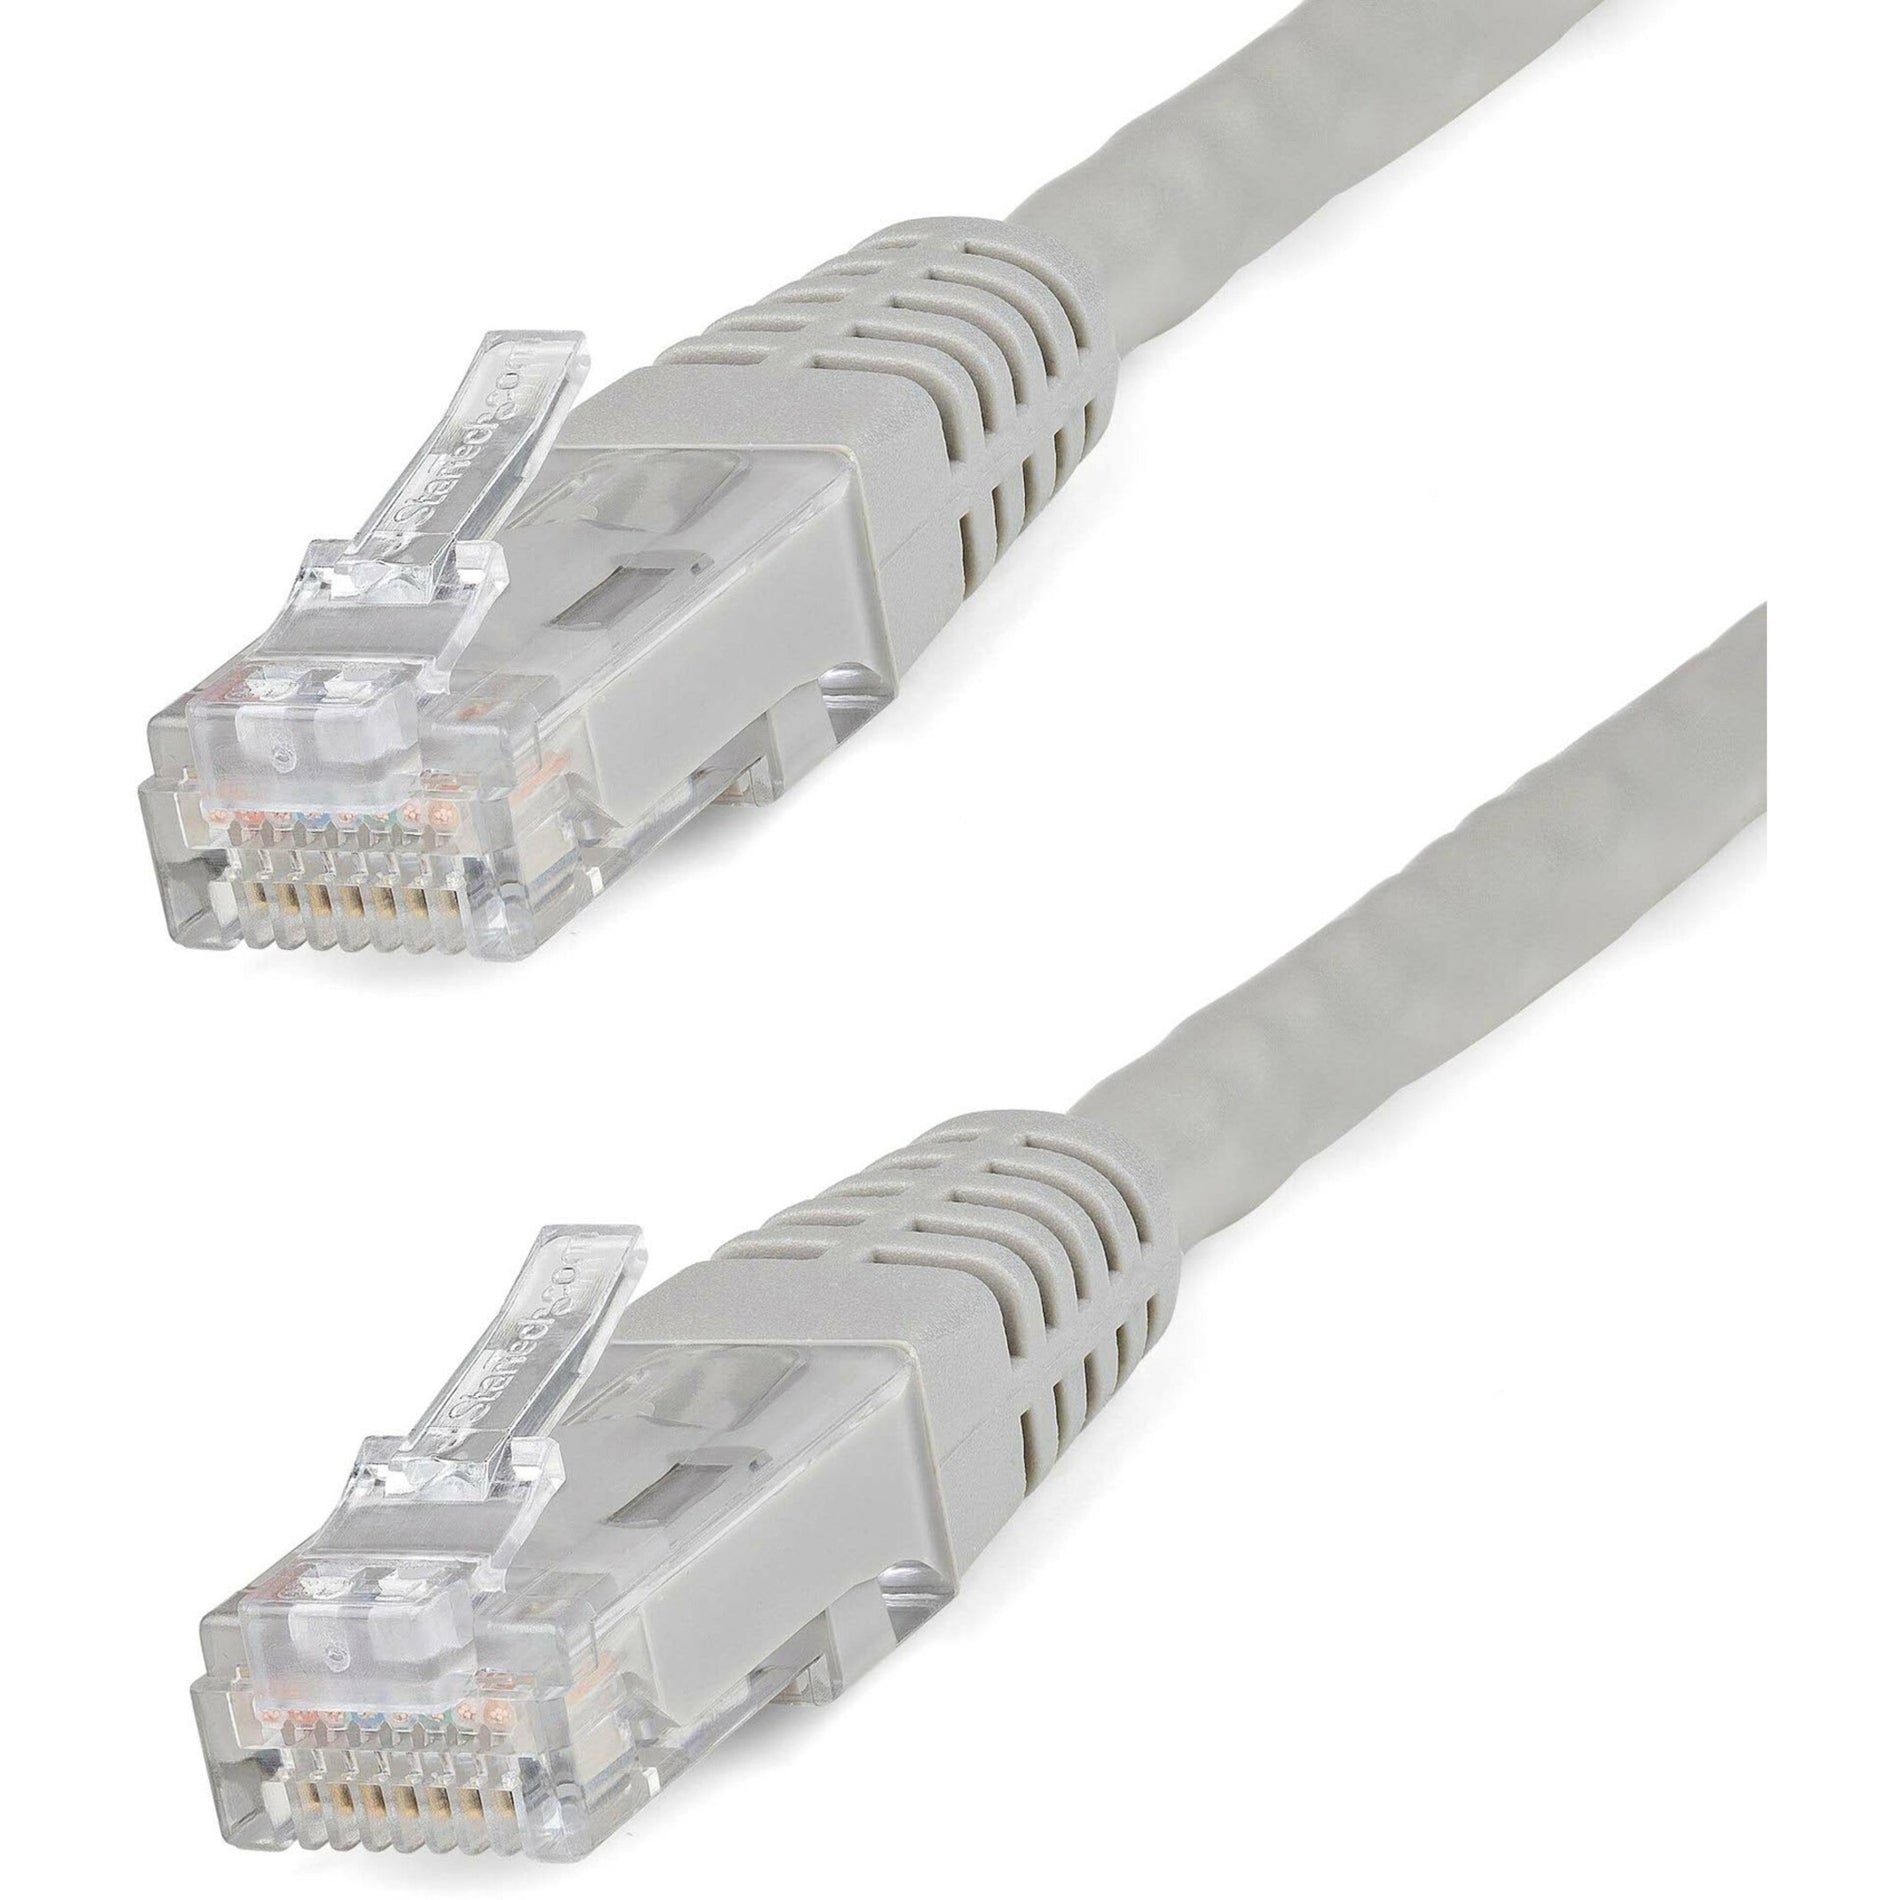 品牌：StarTech.com 产品名称：灰色Cat6 UTP补丁电缆20英尺，10 Gbit/s数据传输速率，终身保修